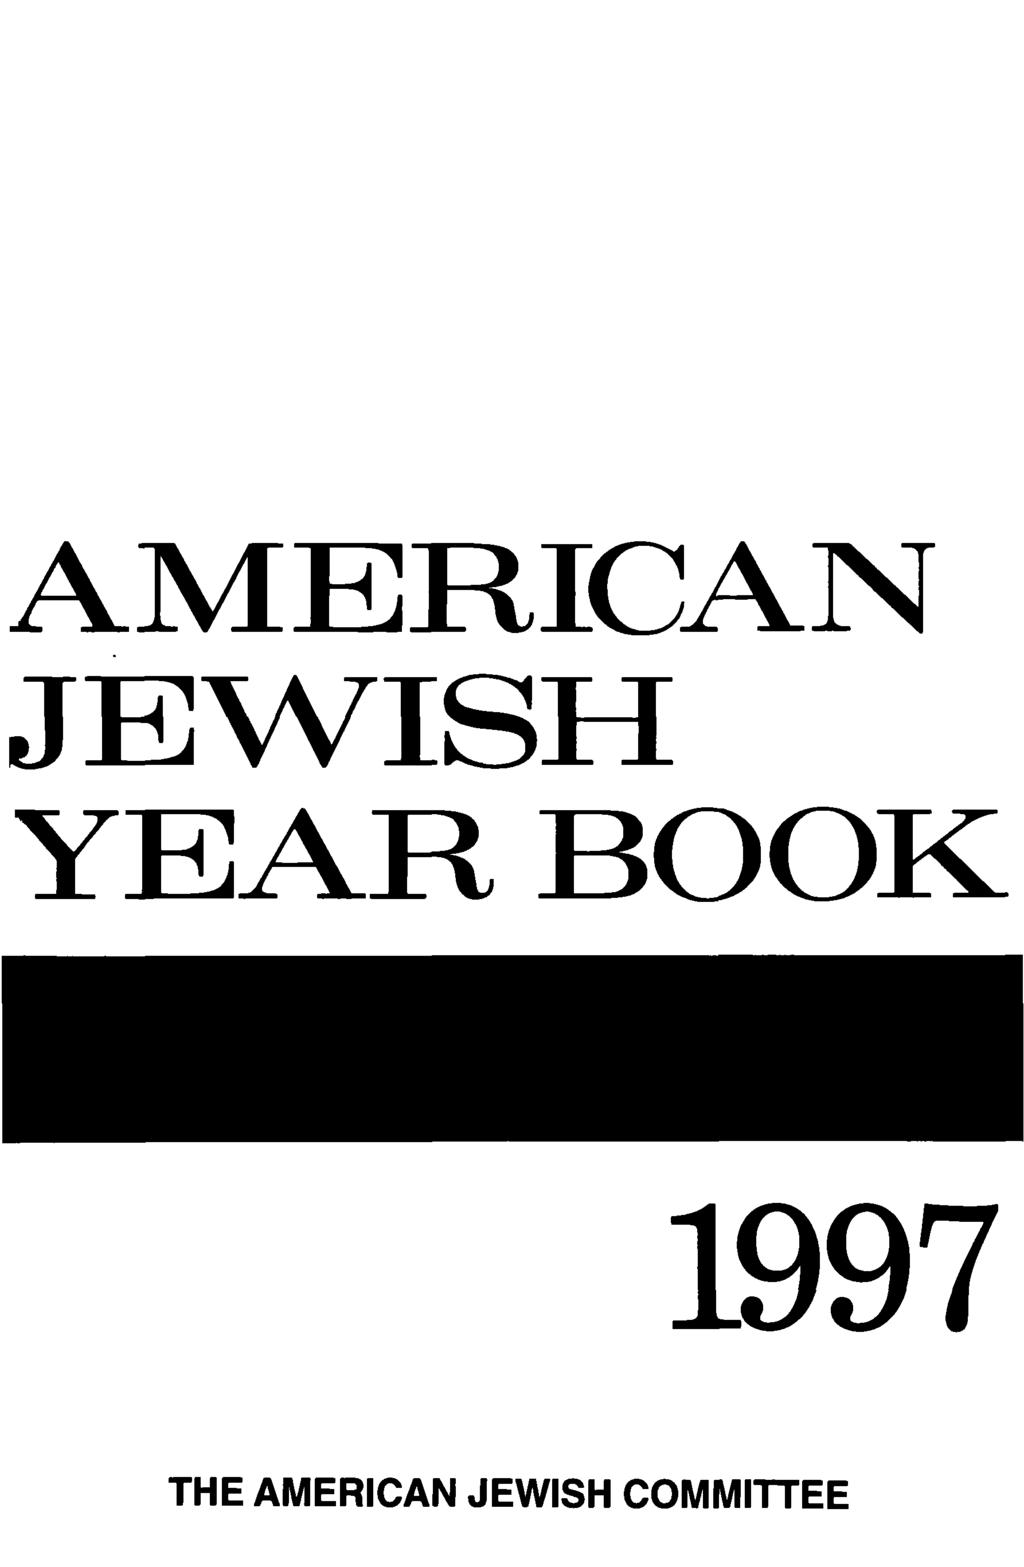 AMERICAN JEWISH YEAR BOOK